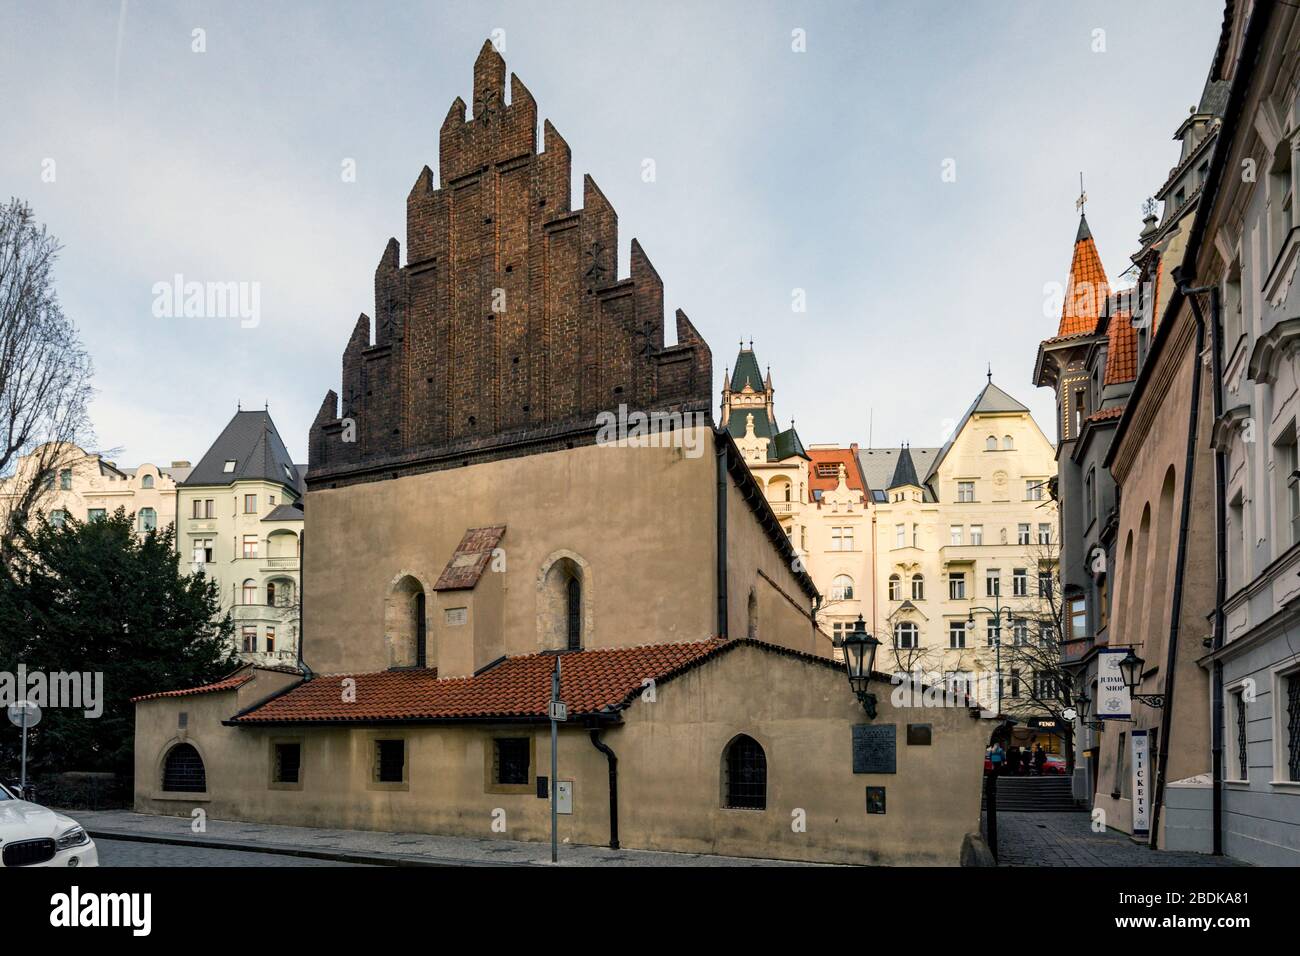 Die Altneusynagoge aus dem 13. Jahrhundert in Prag, die älteste funktionierende Synagoge in Europa. Stockfoto